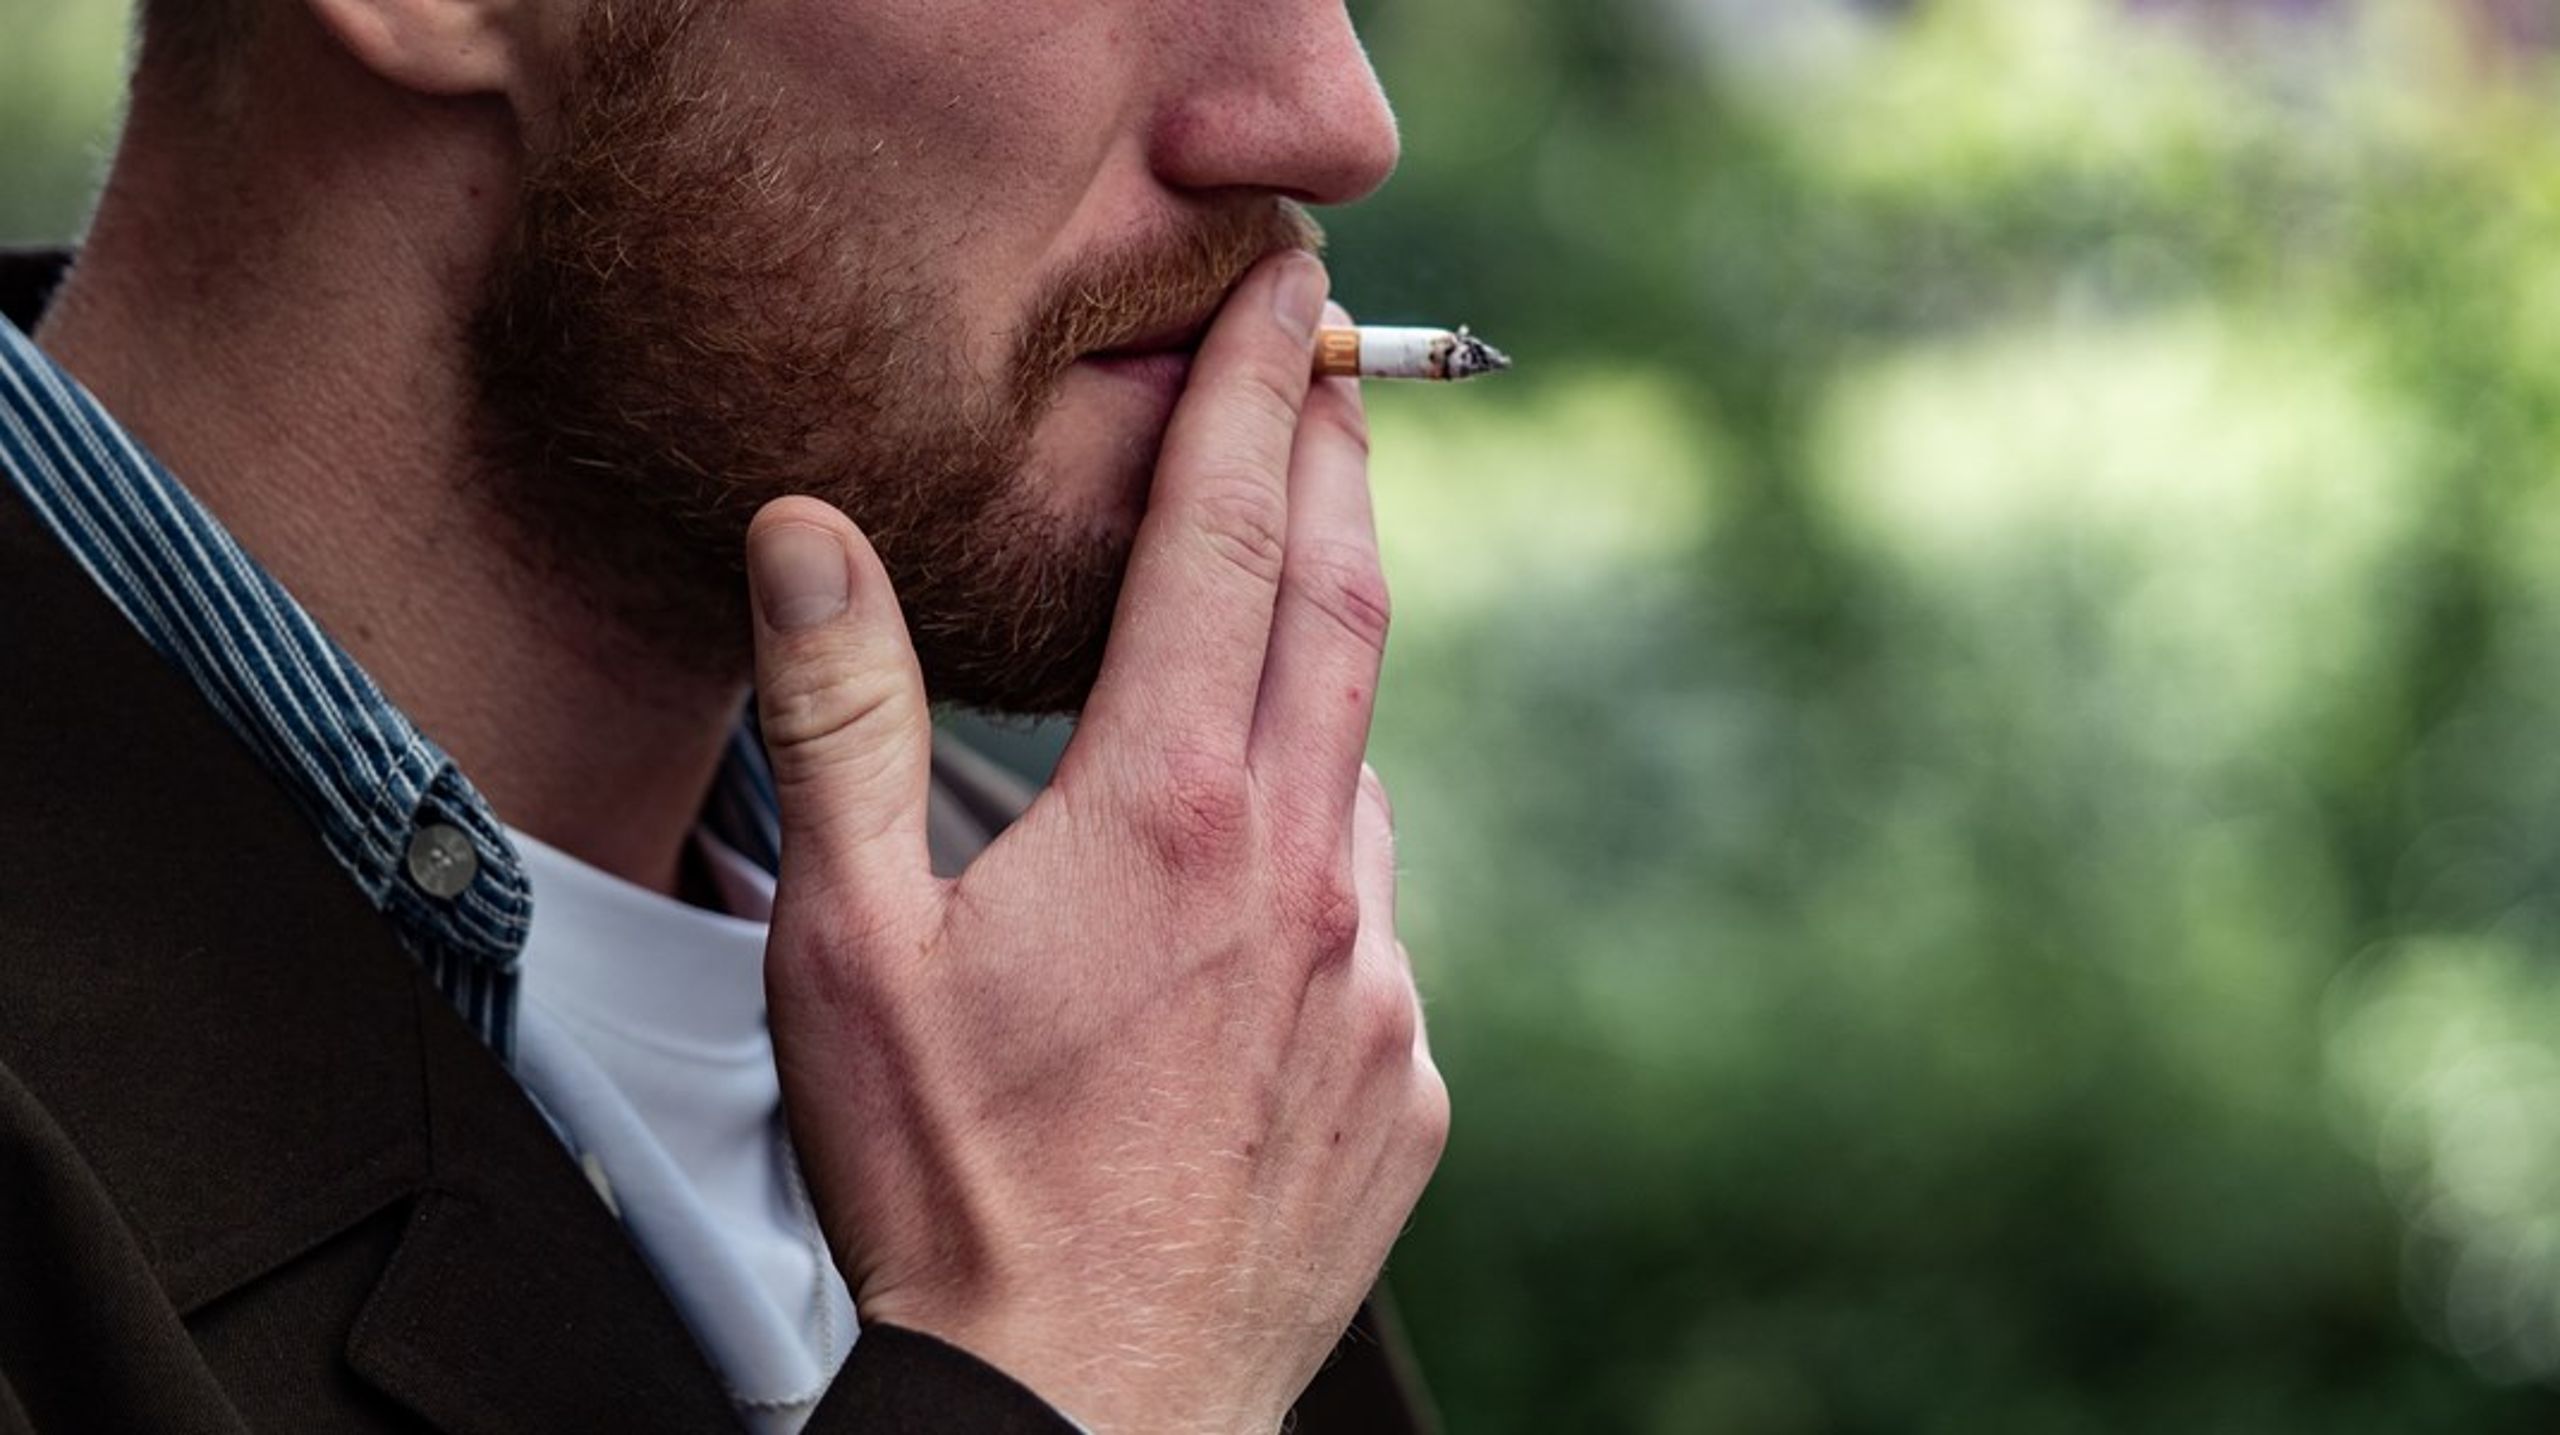 Hver femte dansker ryger dagligt eller lejlighedsvist, og rygning har store konsekvenser for den enkelte, for familierne og for samfundet. De svenske tal for rygning og kræfttilfælde er så misundelsesværdige, at man bør tage ved lære af dem, skriver Inger Schroll-Fleischer.